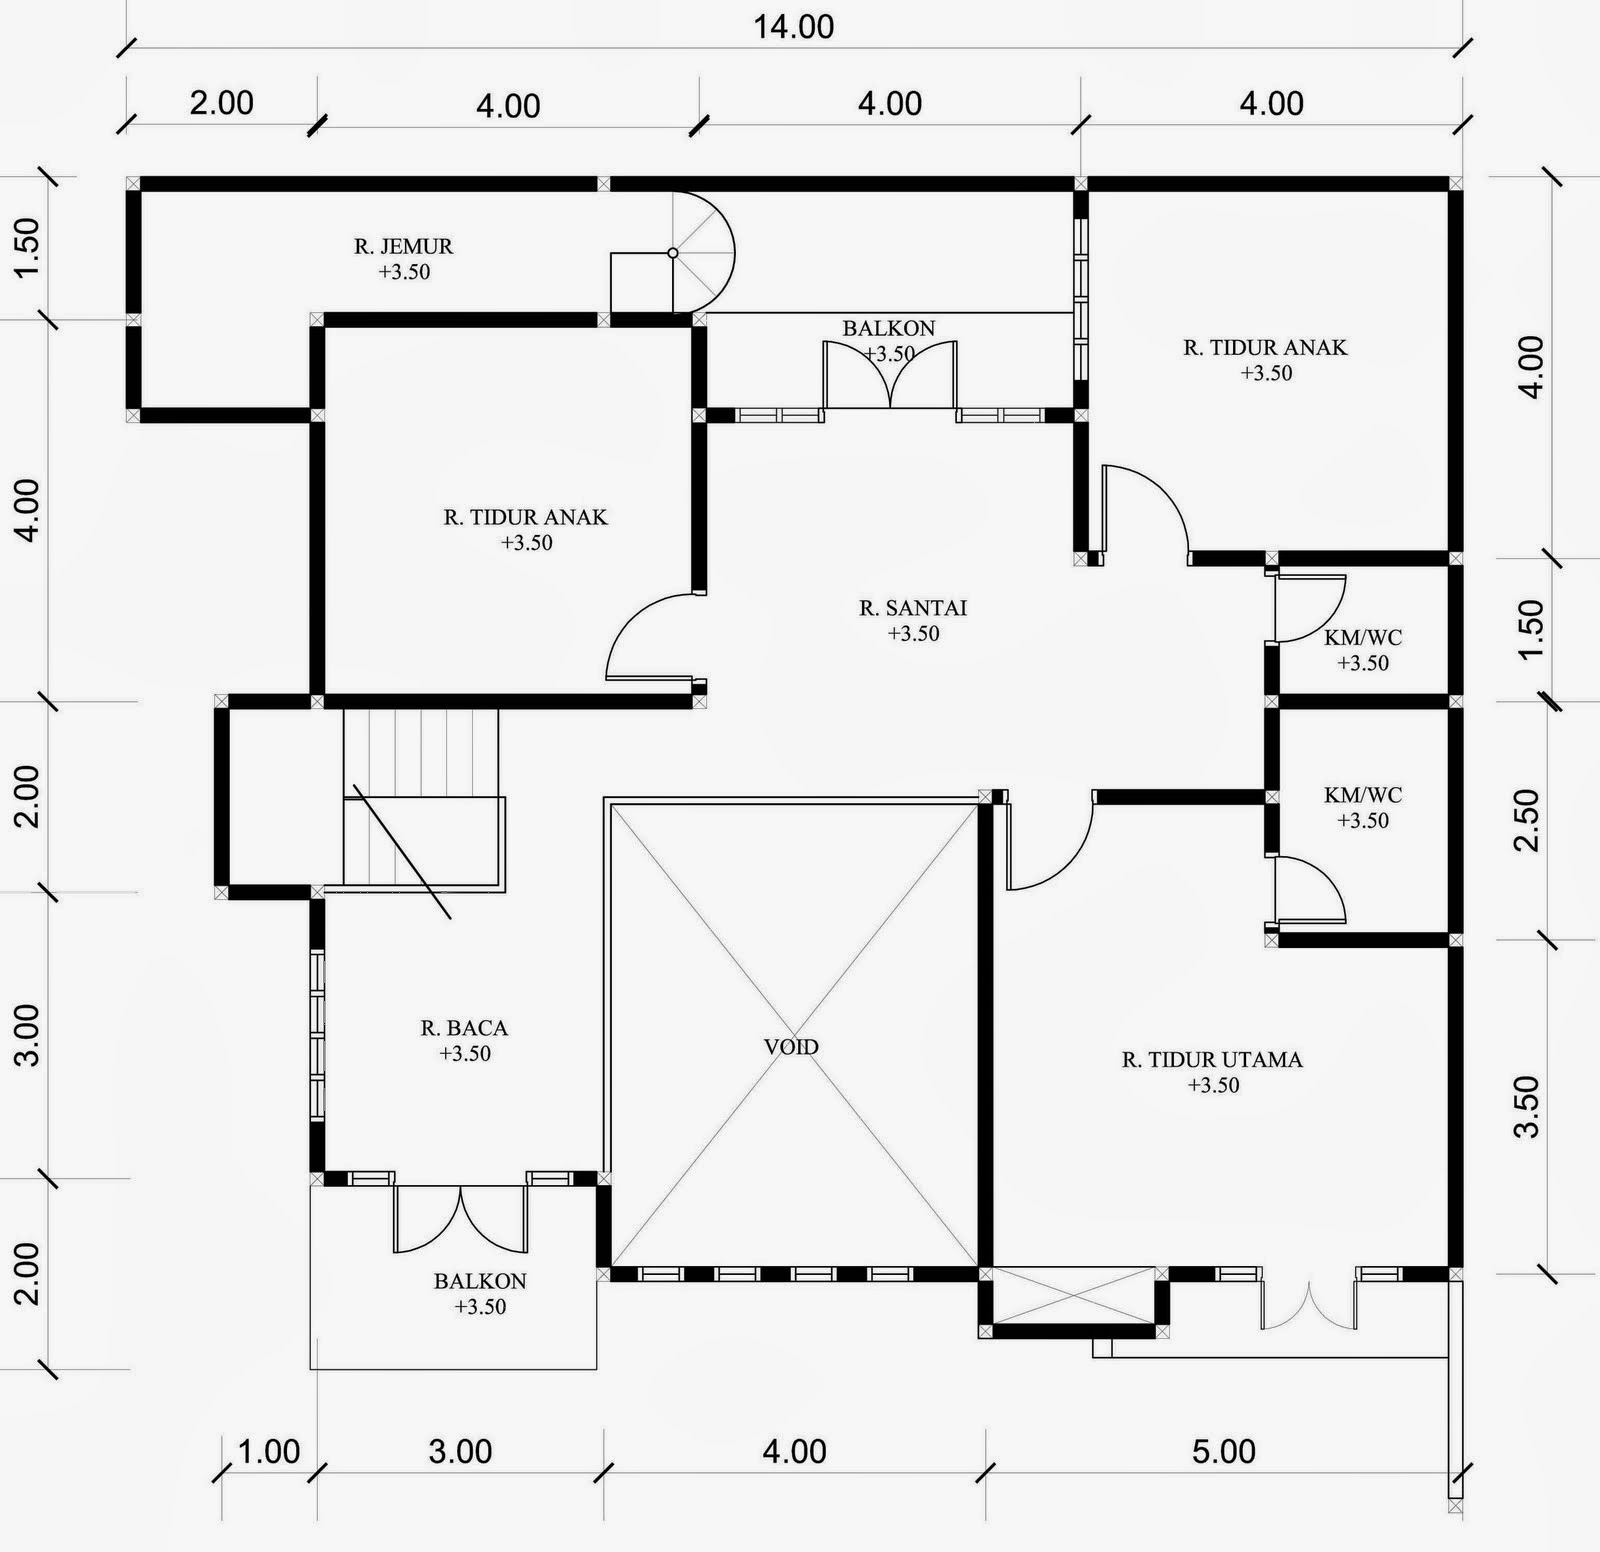 Desain Rumah Minimalis 2 Lantai 9 X 13 Expo Desain Rumah